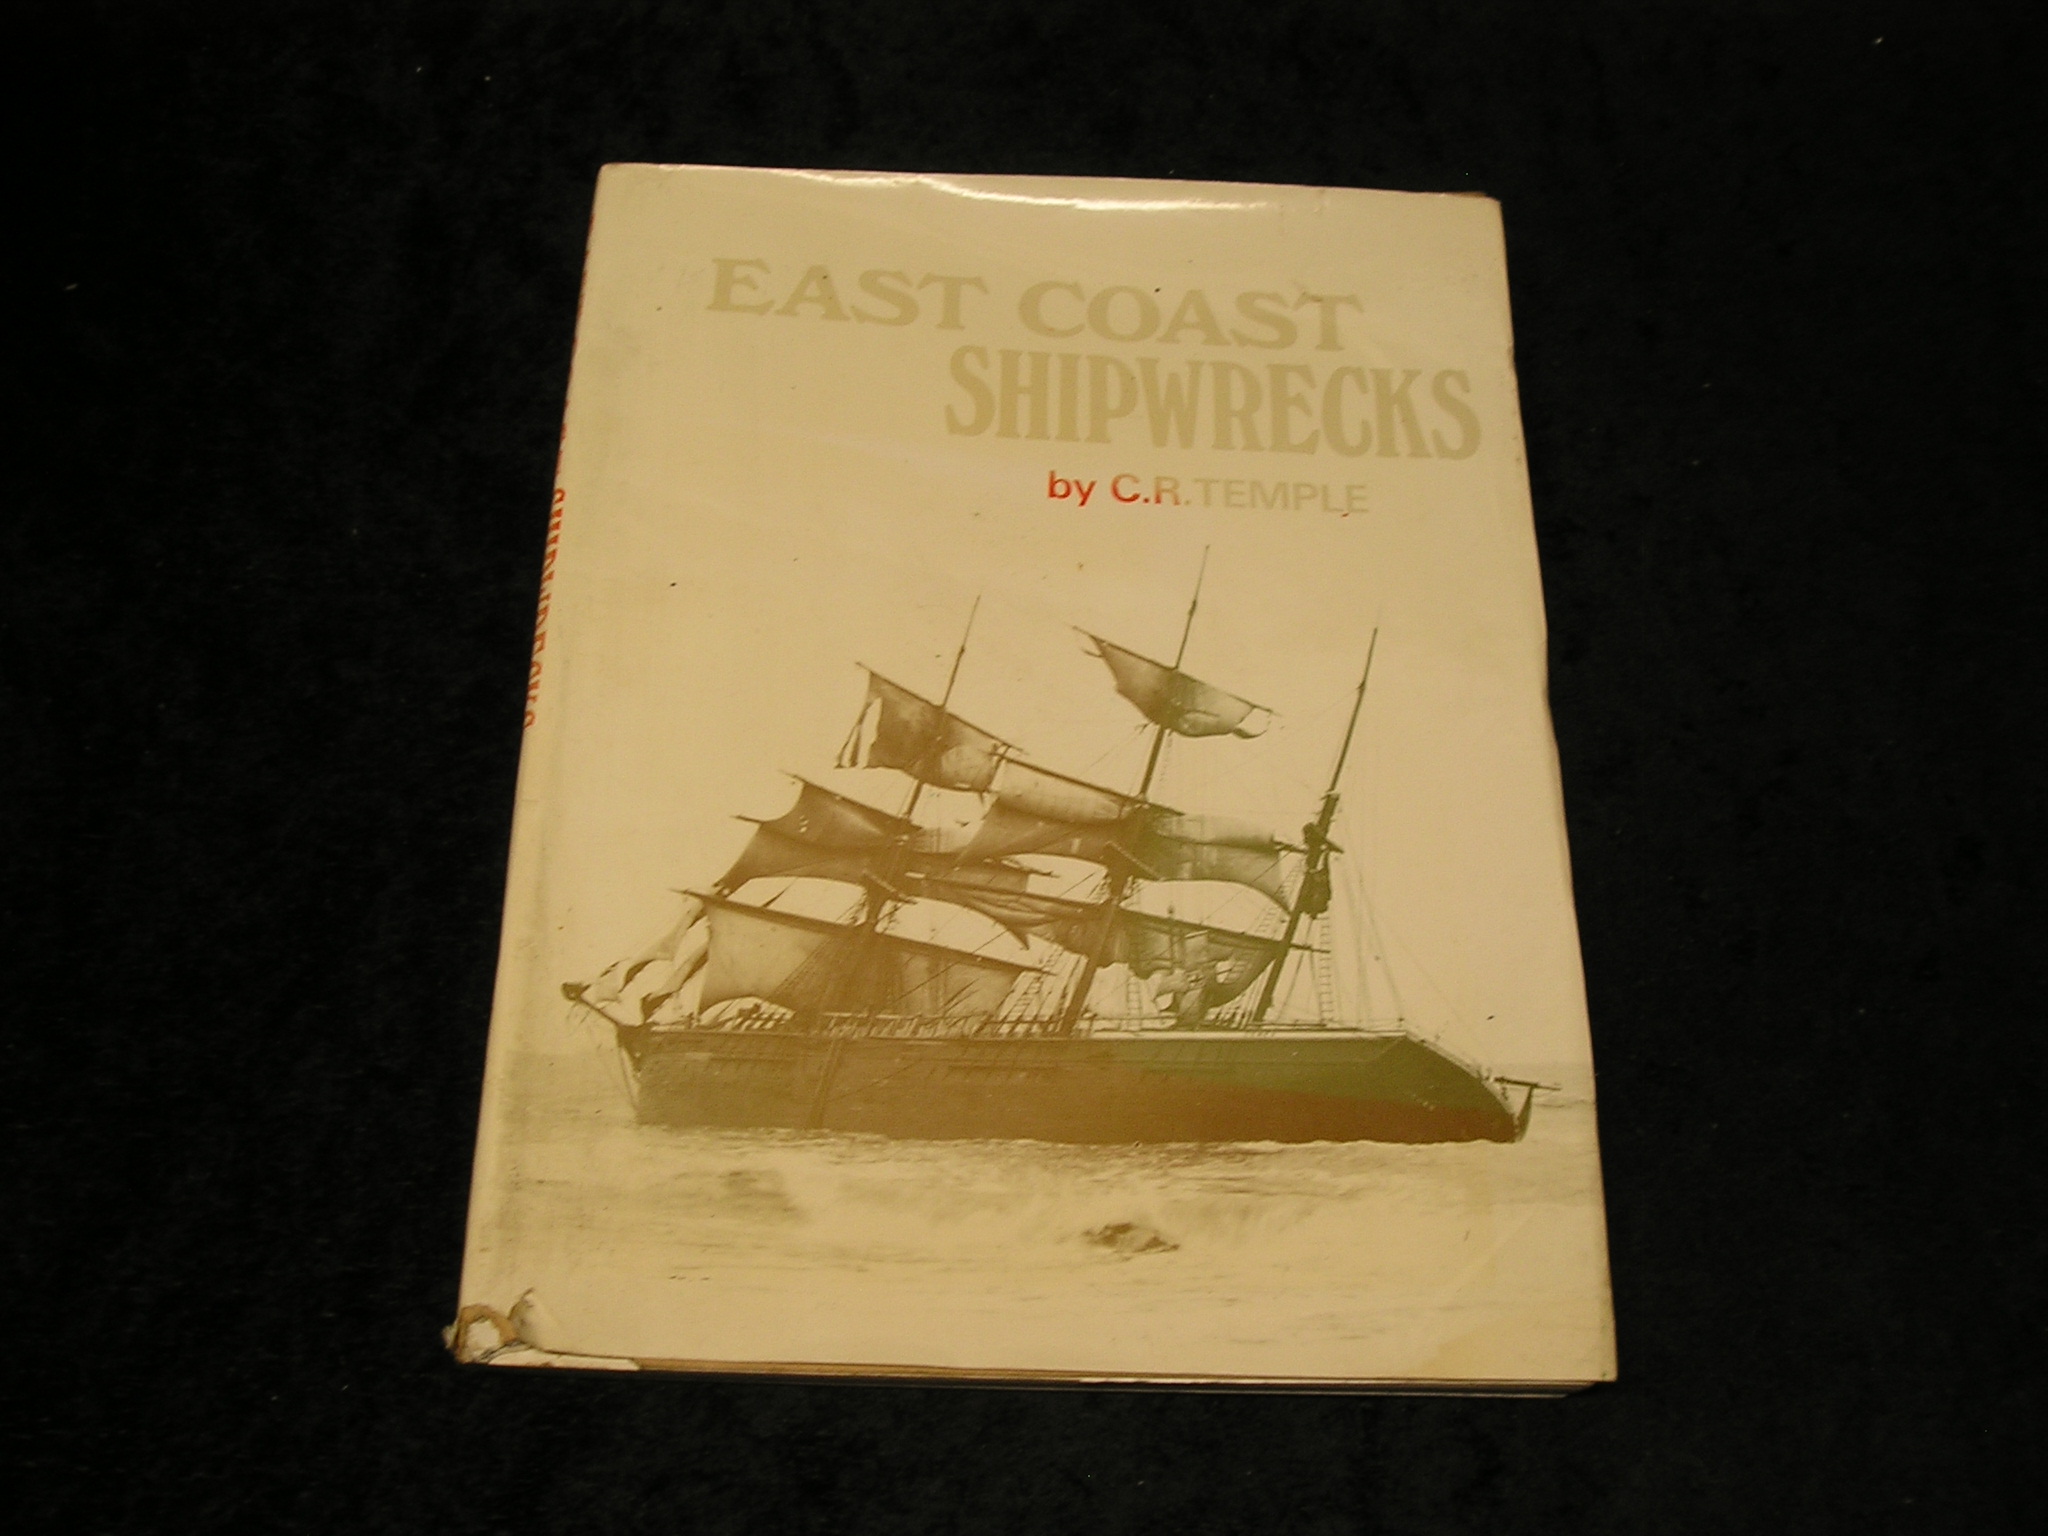 East Coast Shipwrecks